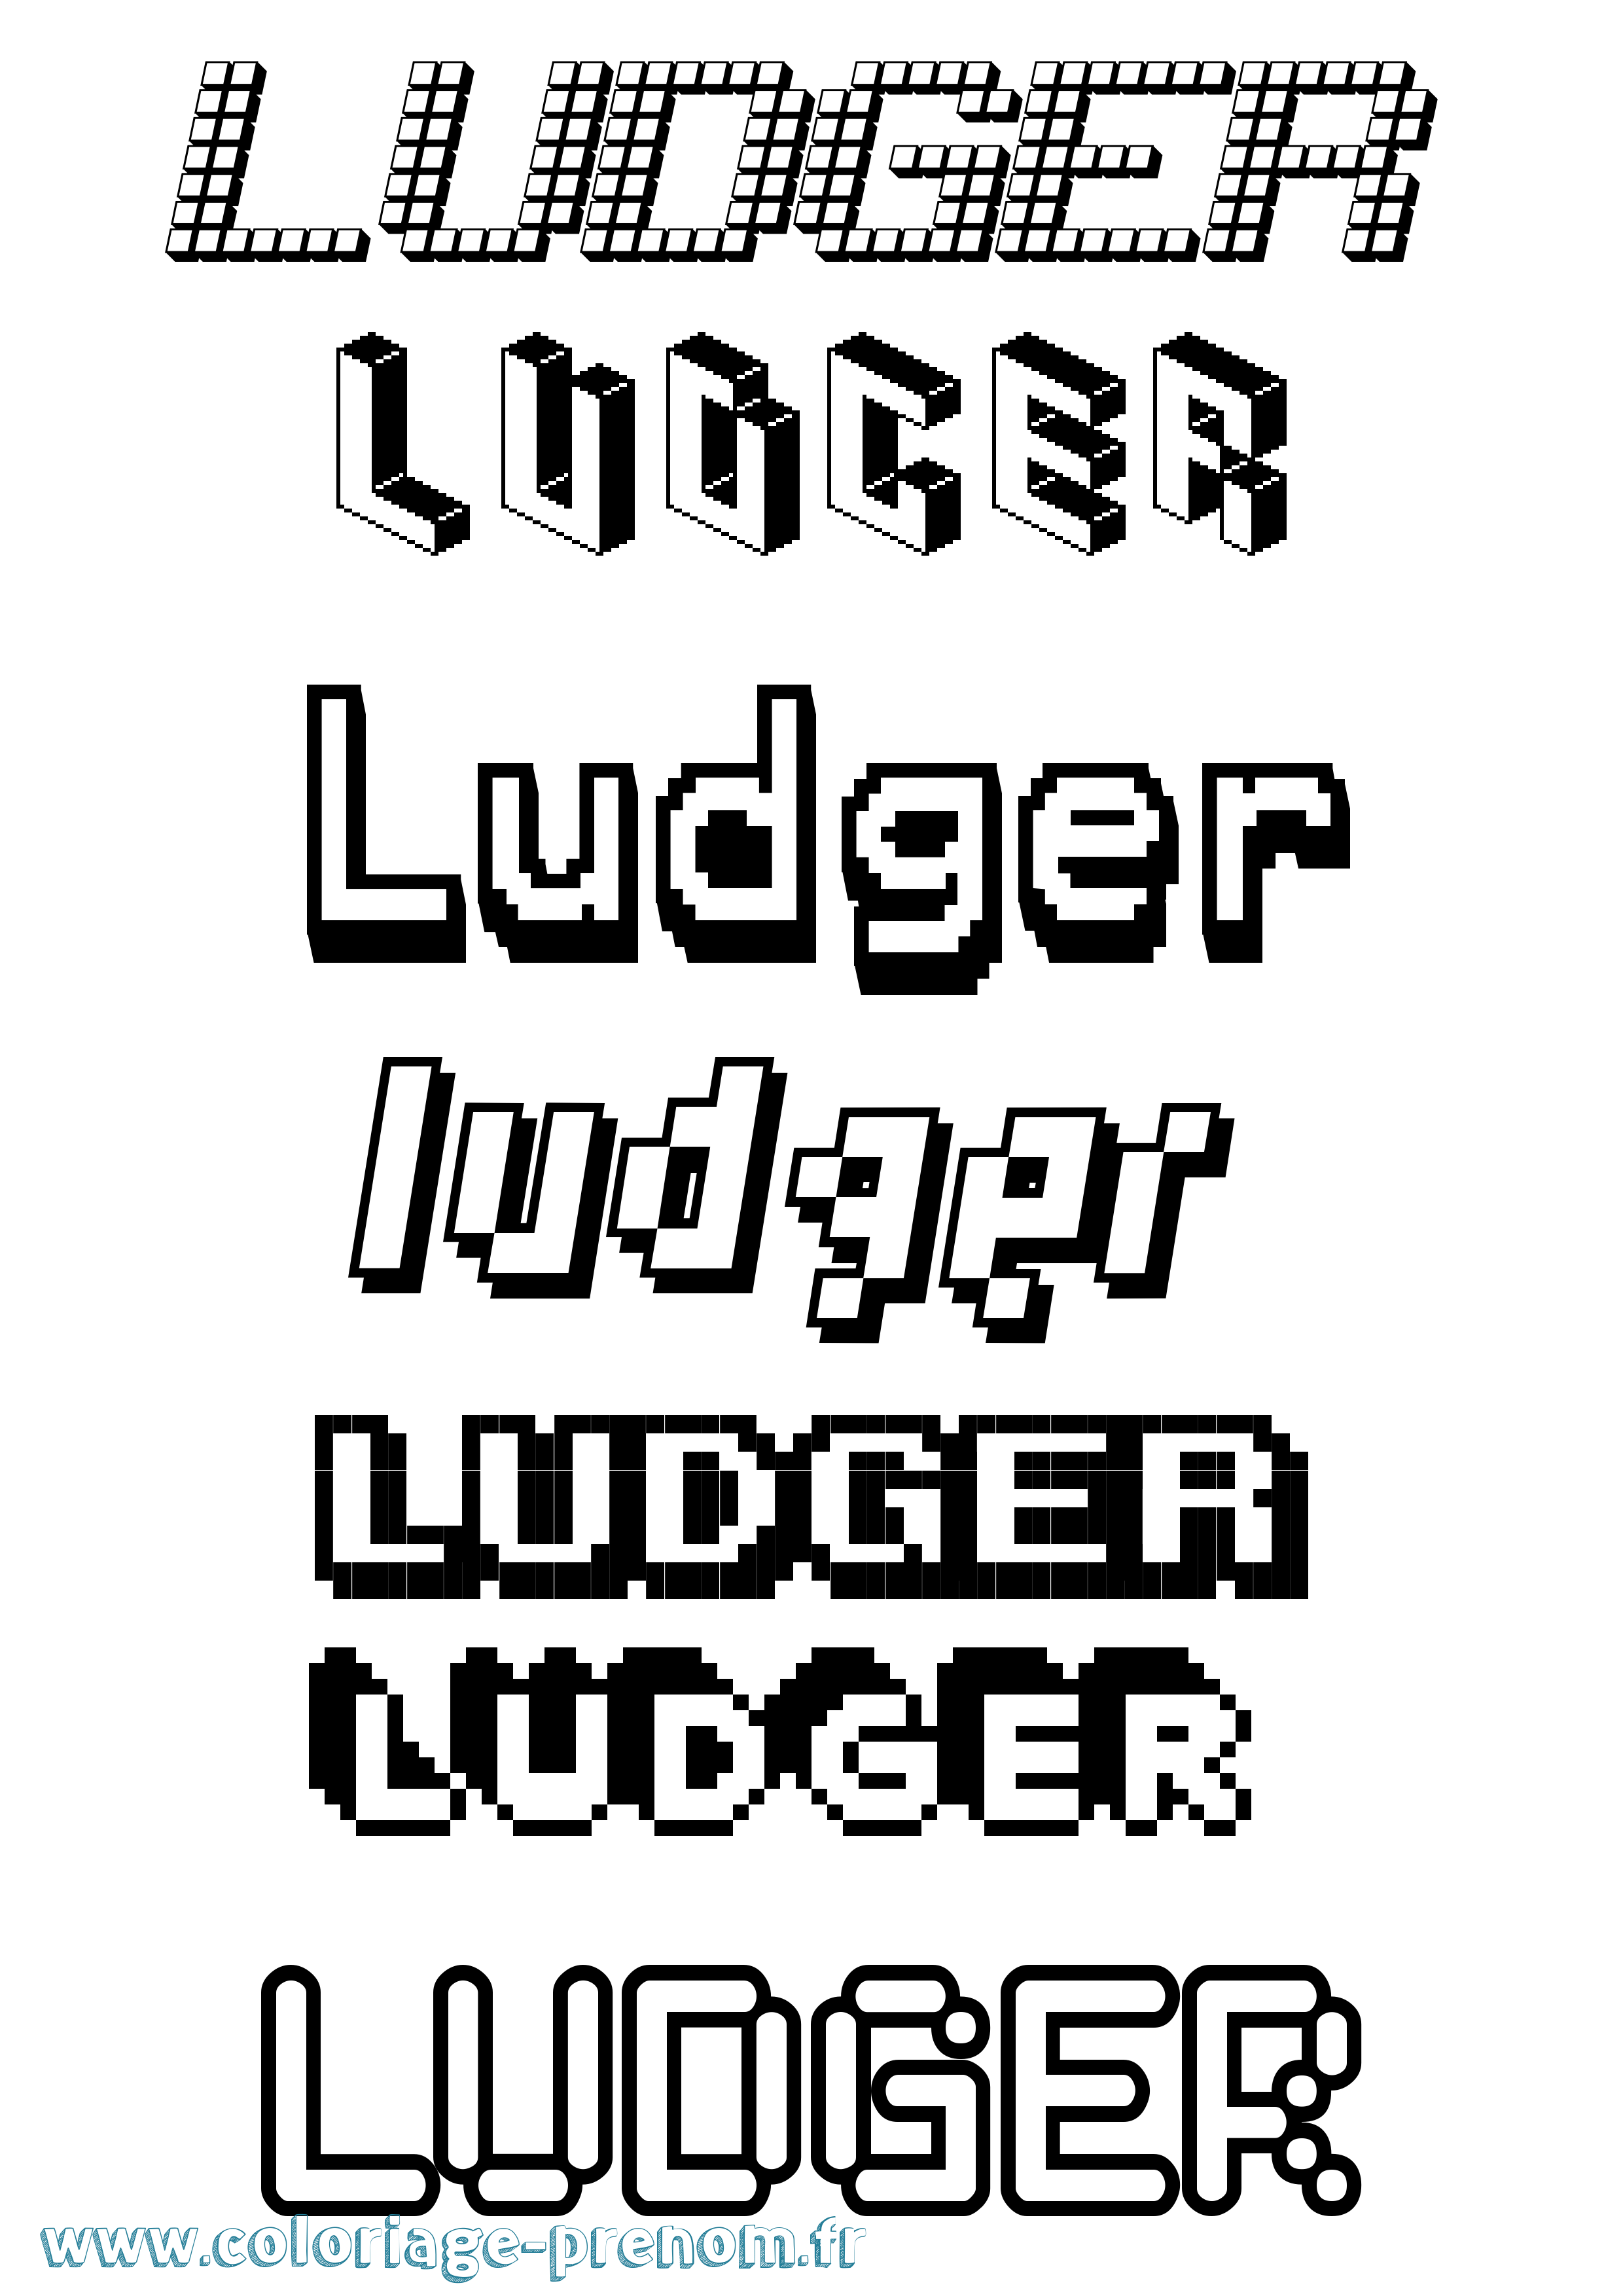 Coloriage prénom Ludger Pixel